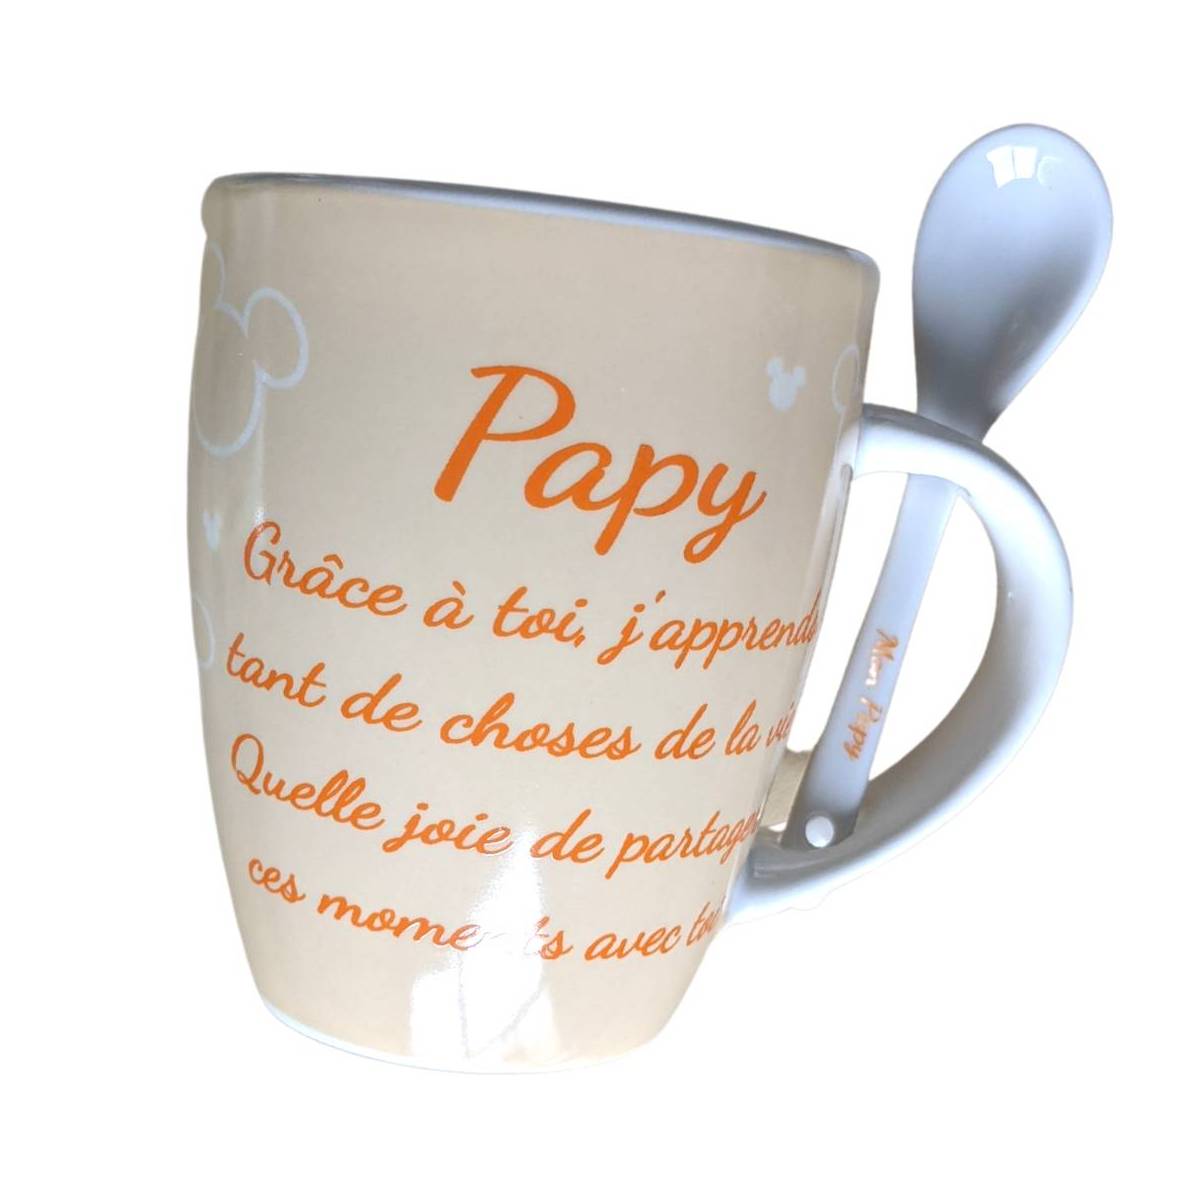 Mug Céramique Mickey Mouse Cadeau - Papy